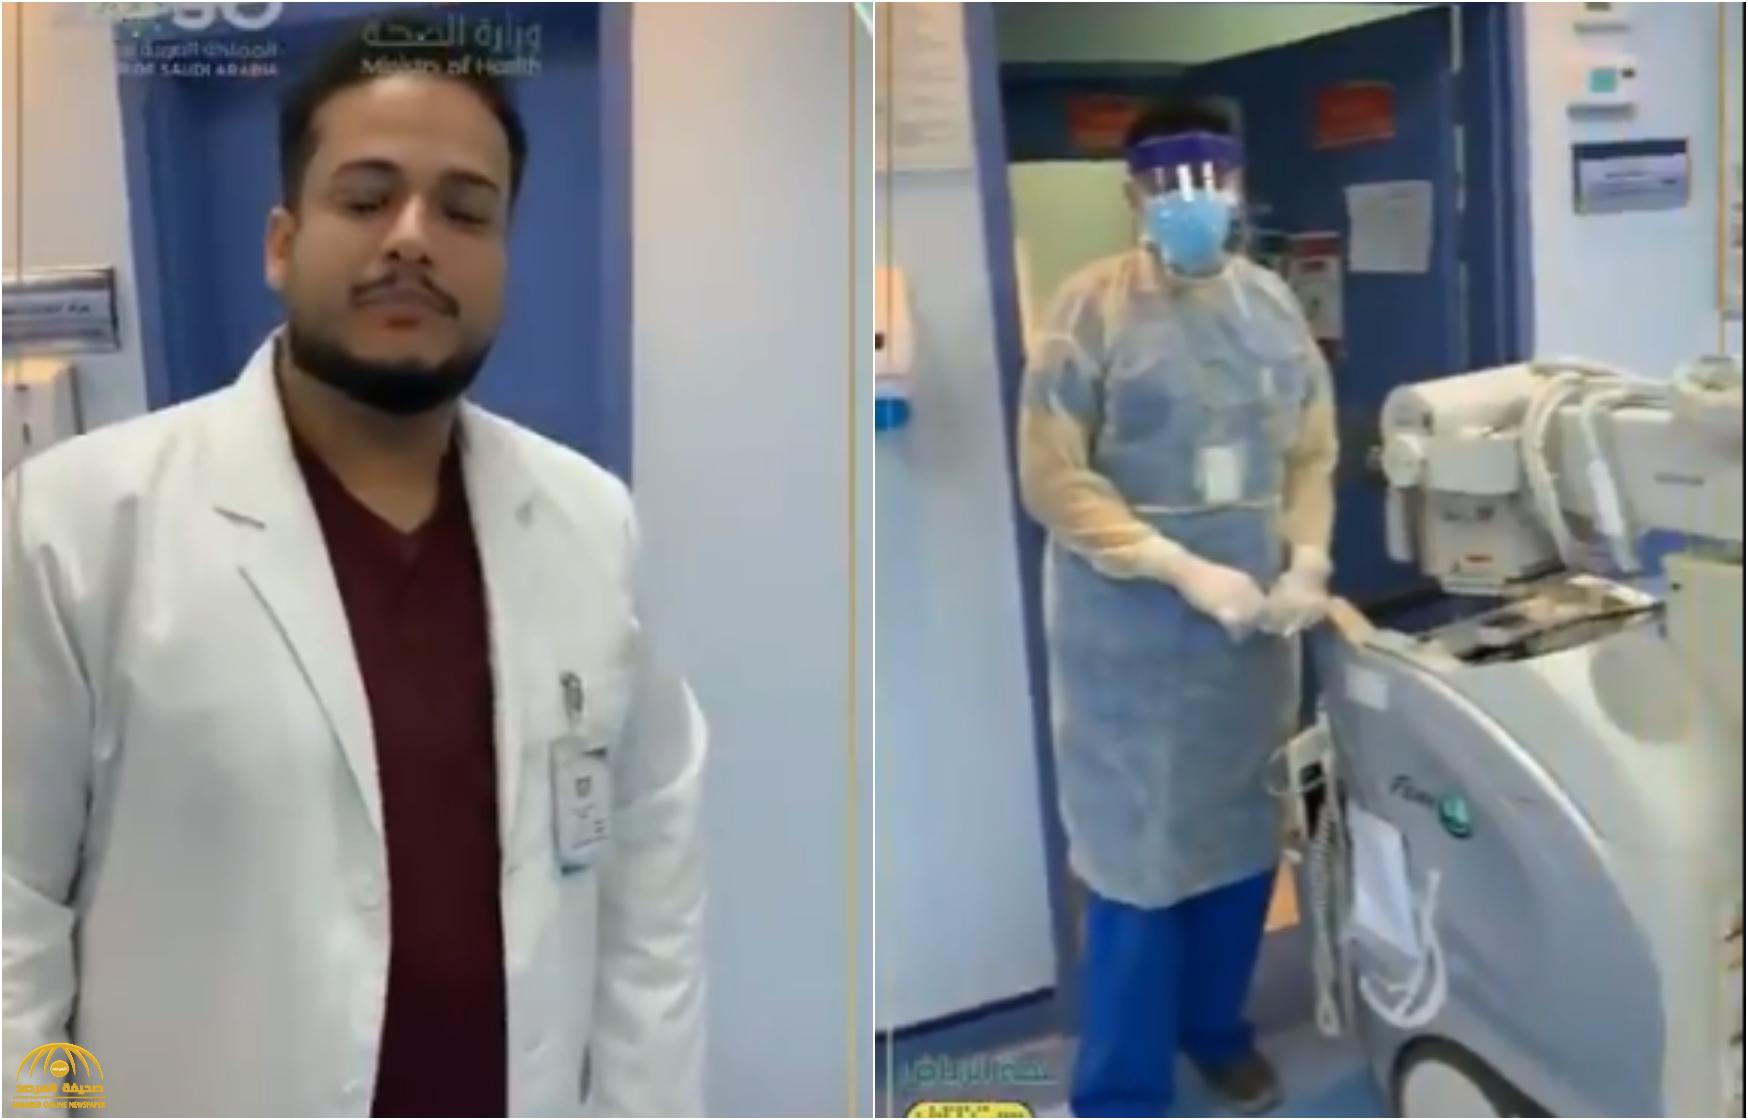 حقيقة مقطع الفيديو المتداول بشأن وجود "حالة مصابة" بفيروس كورونا بمستشفى في الخرج!